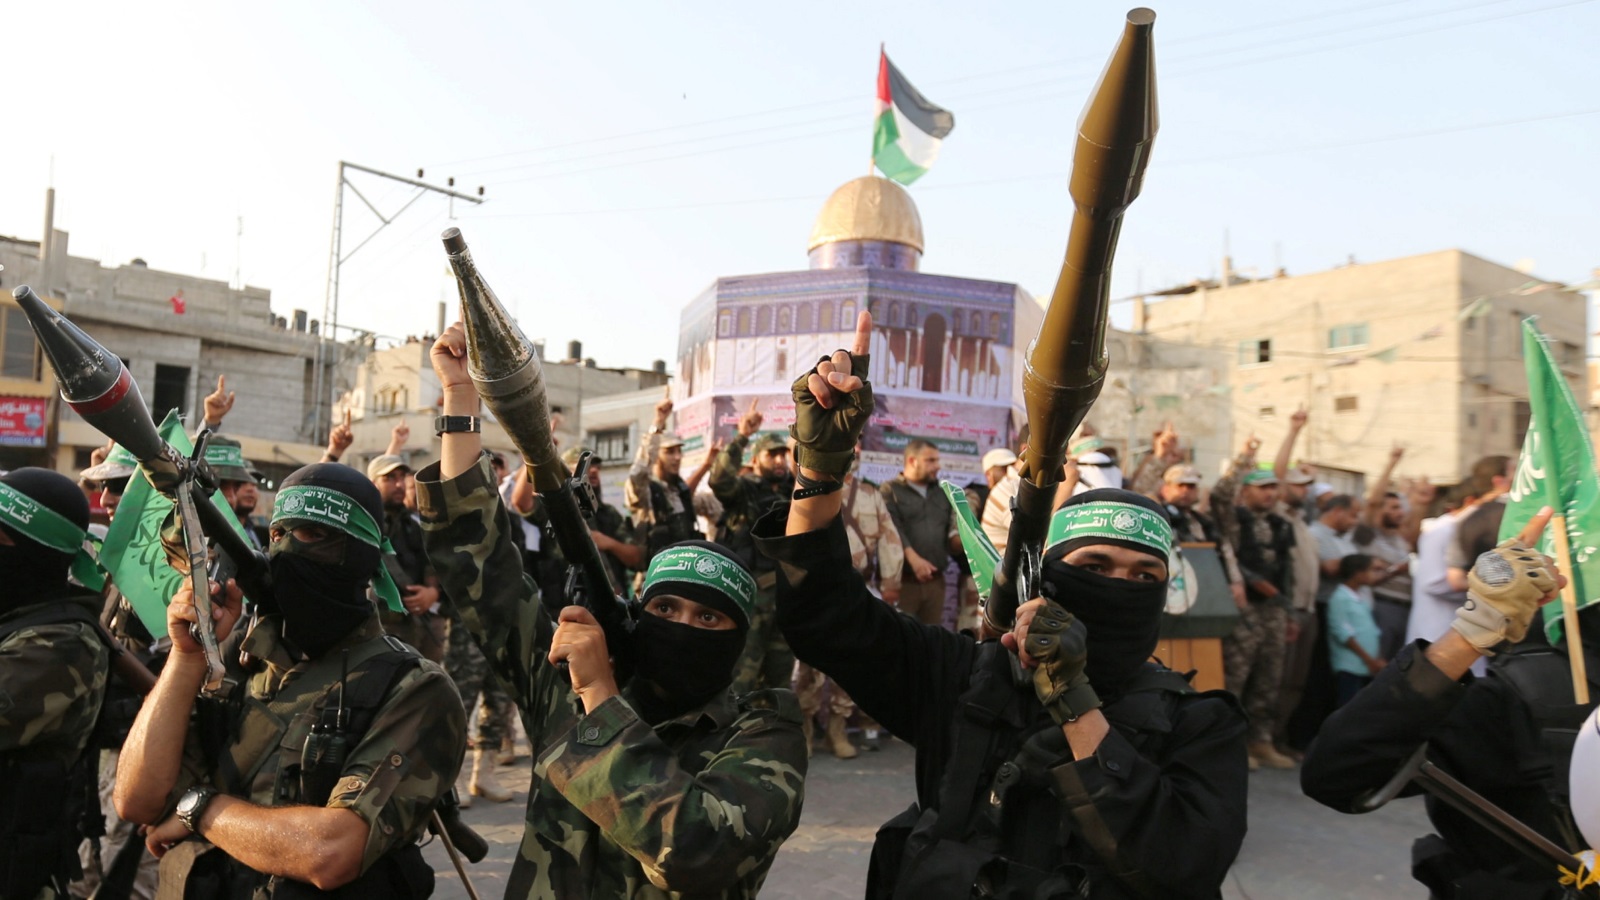 الأغلبيّة العظمى ترى بأن عقدة المصالحة الحقيقية هي سلاح حماس الذي يُعدُّ السّبب الرئيس لشعبيّتها الواسعة، كما يخشون أن تصبح الحالة مماثلة لحزب الله في لبنان